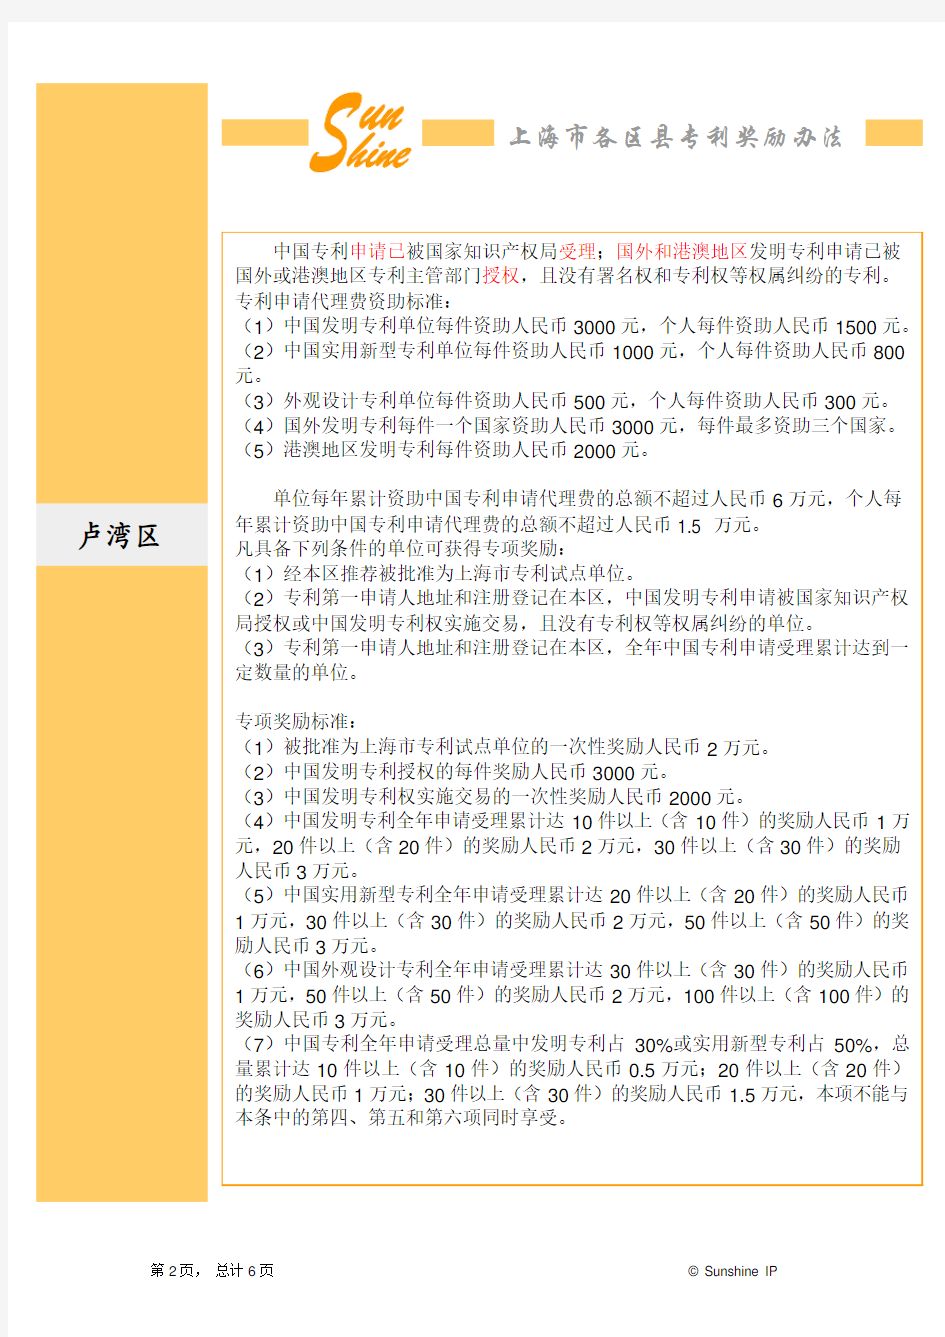 上海地区专利申请优惠政策